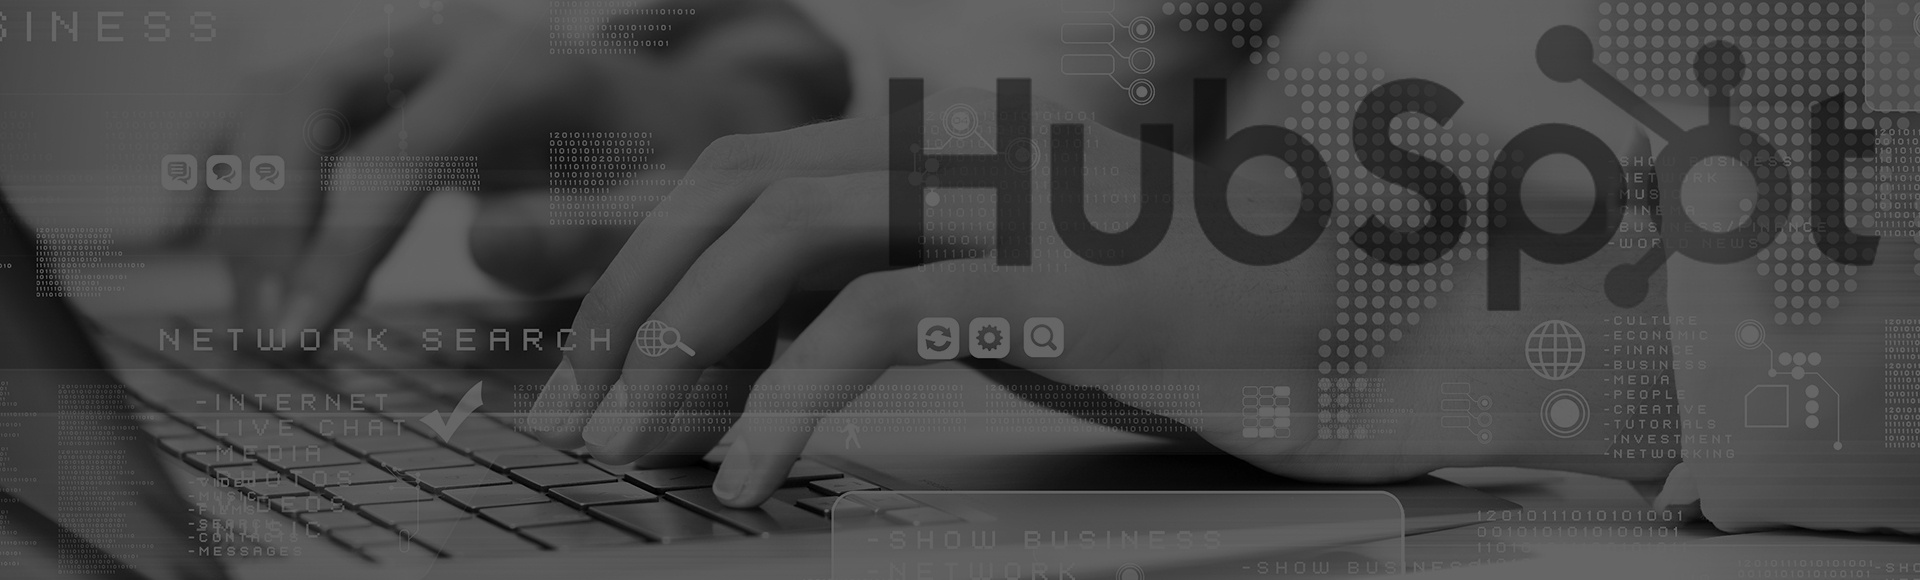 HubSpot CMS - Website Management